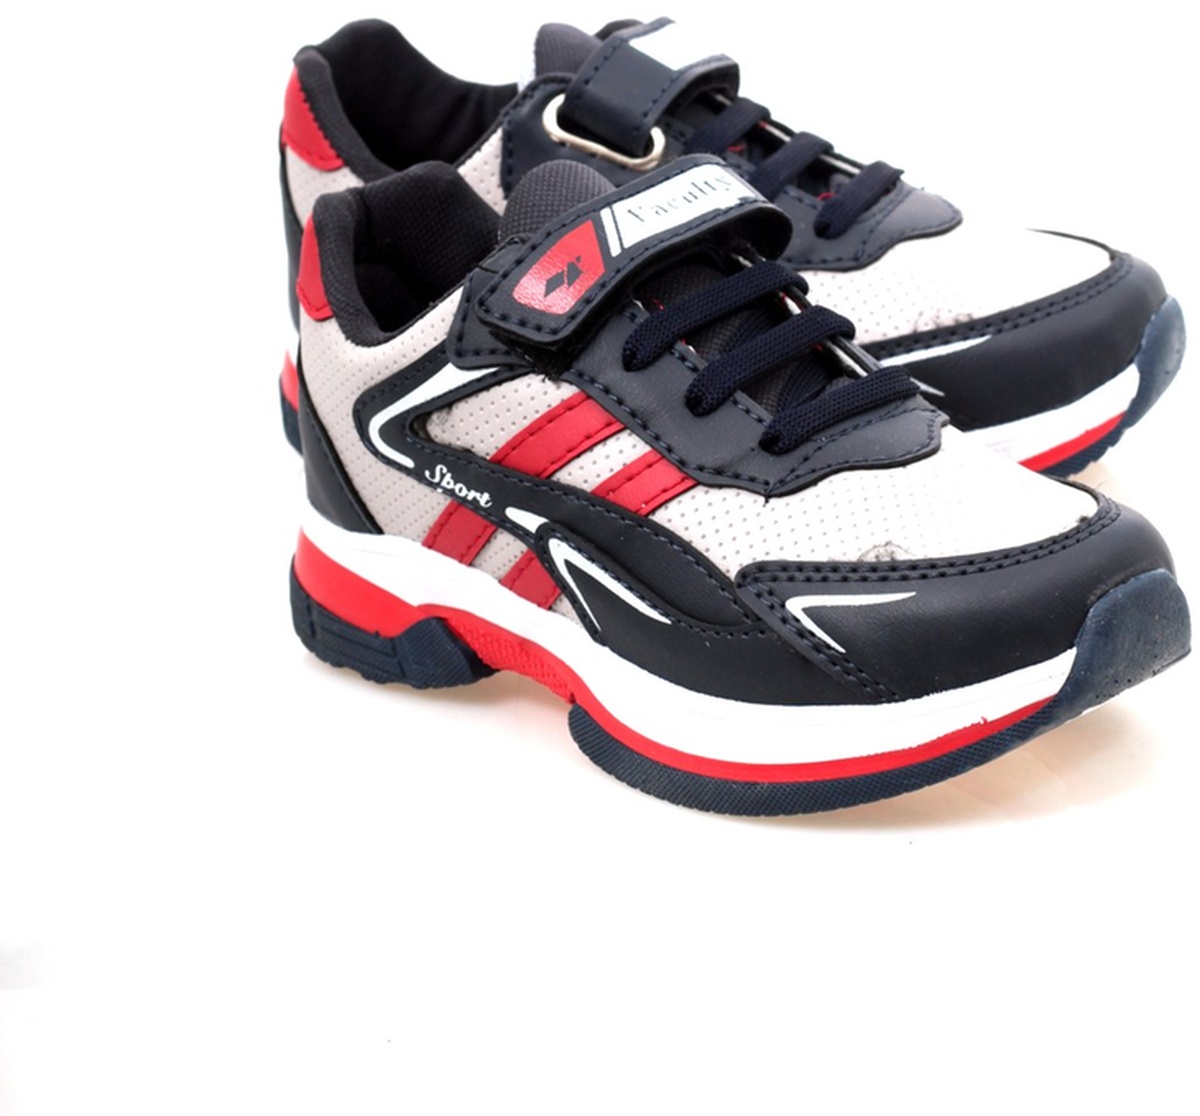 Gri - Lacivert - Kırmızı Cırtlı Çocuk Spor Ayakkabı